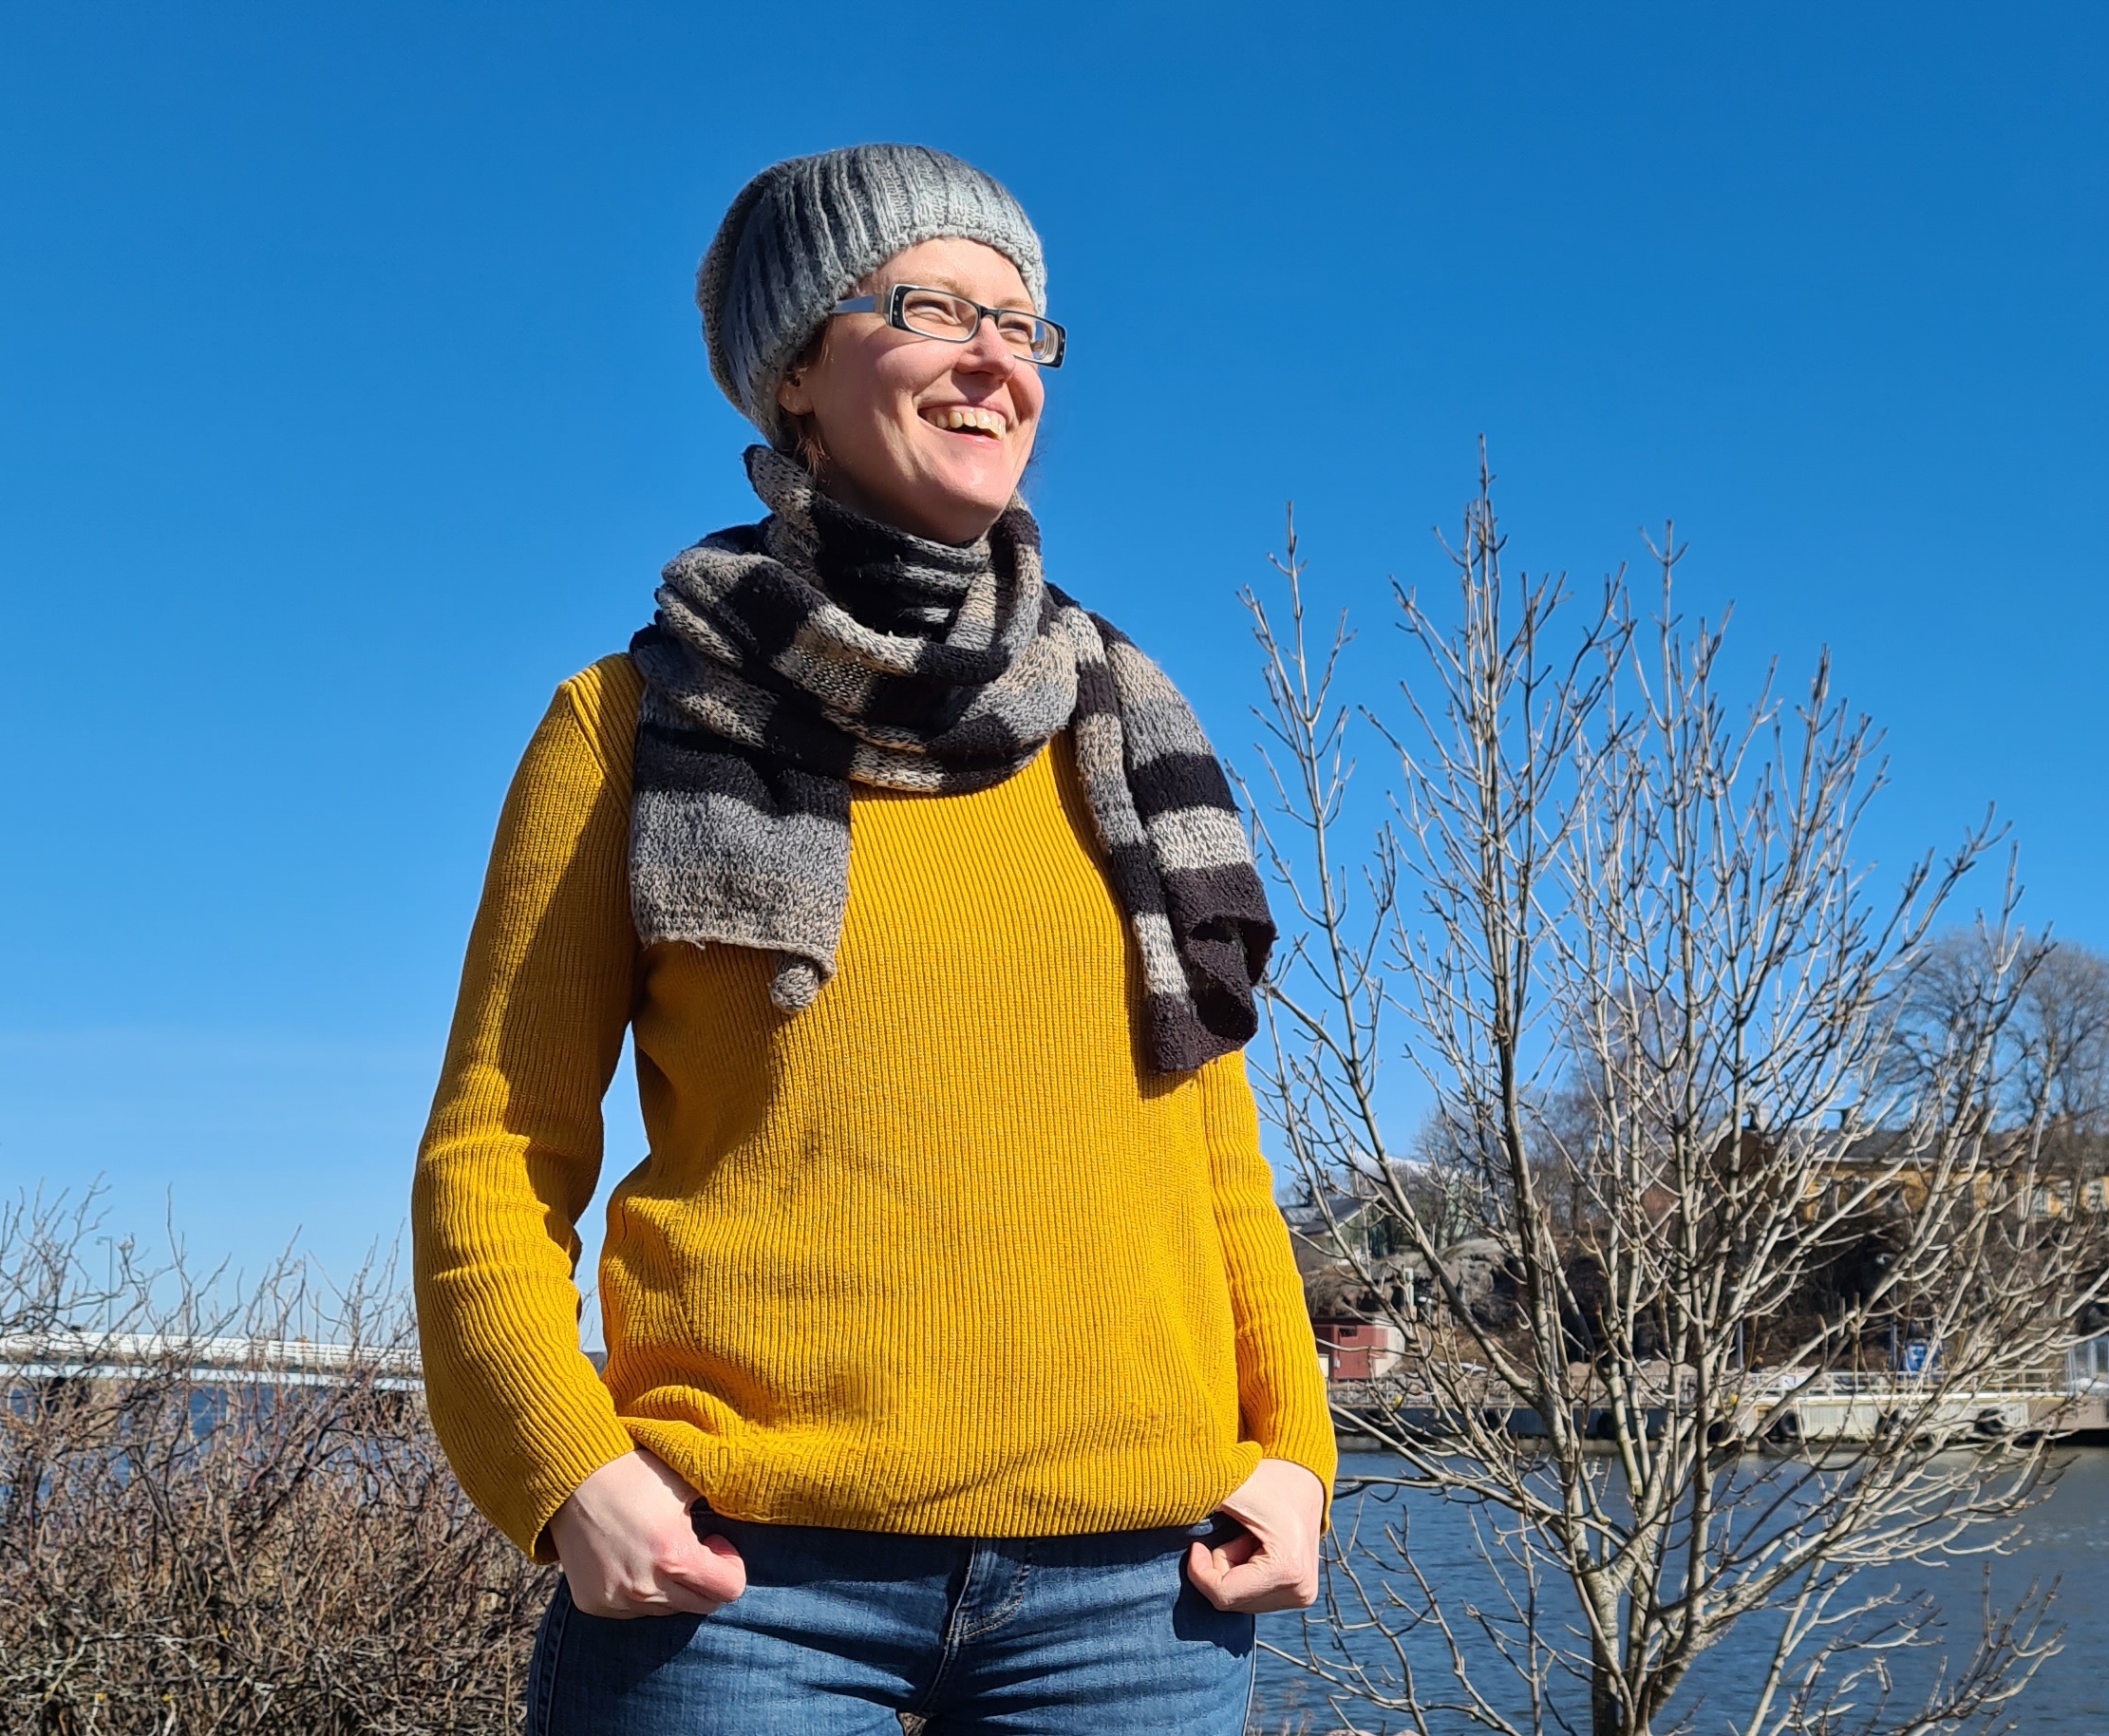 Das Foto zeigt eine junge Frau in Jeans und gelbem Pullover mit Schal und Mütze, die in lockerer Pose draußen vor einem natürlichen Hintergrund unter blauem Himmel steht. Sie trägt eine schwarze Brille und lacht. Im Hintergrund sind einige Sträucher und Wasser zu sehen.